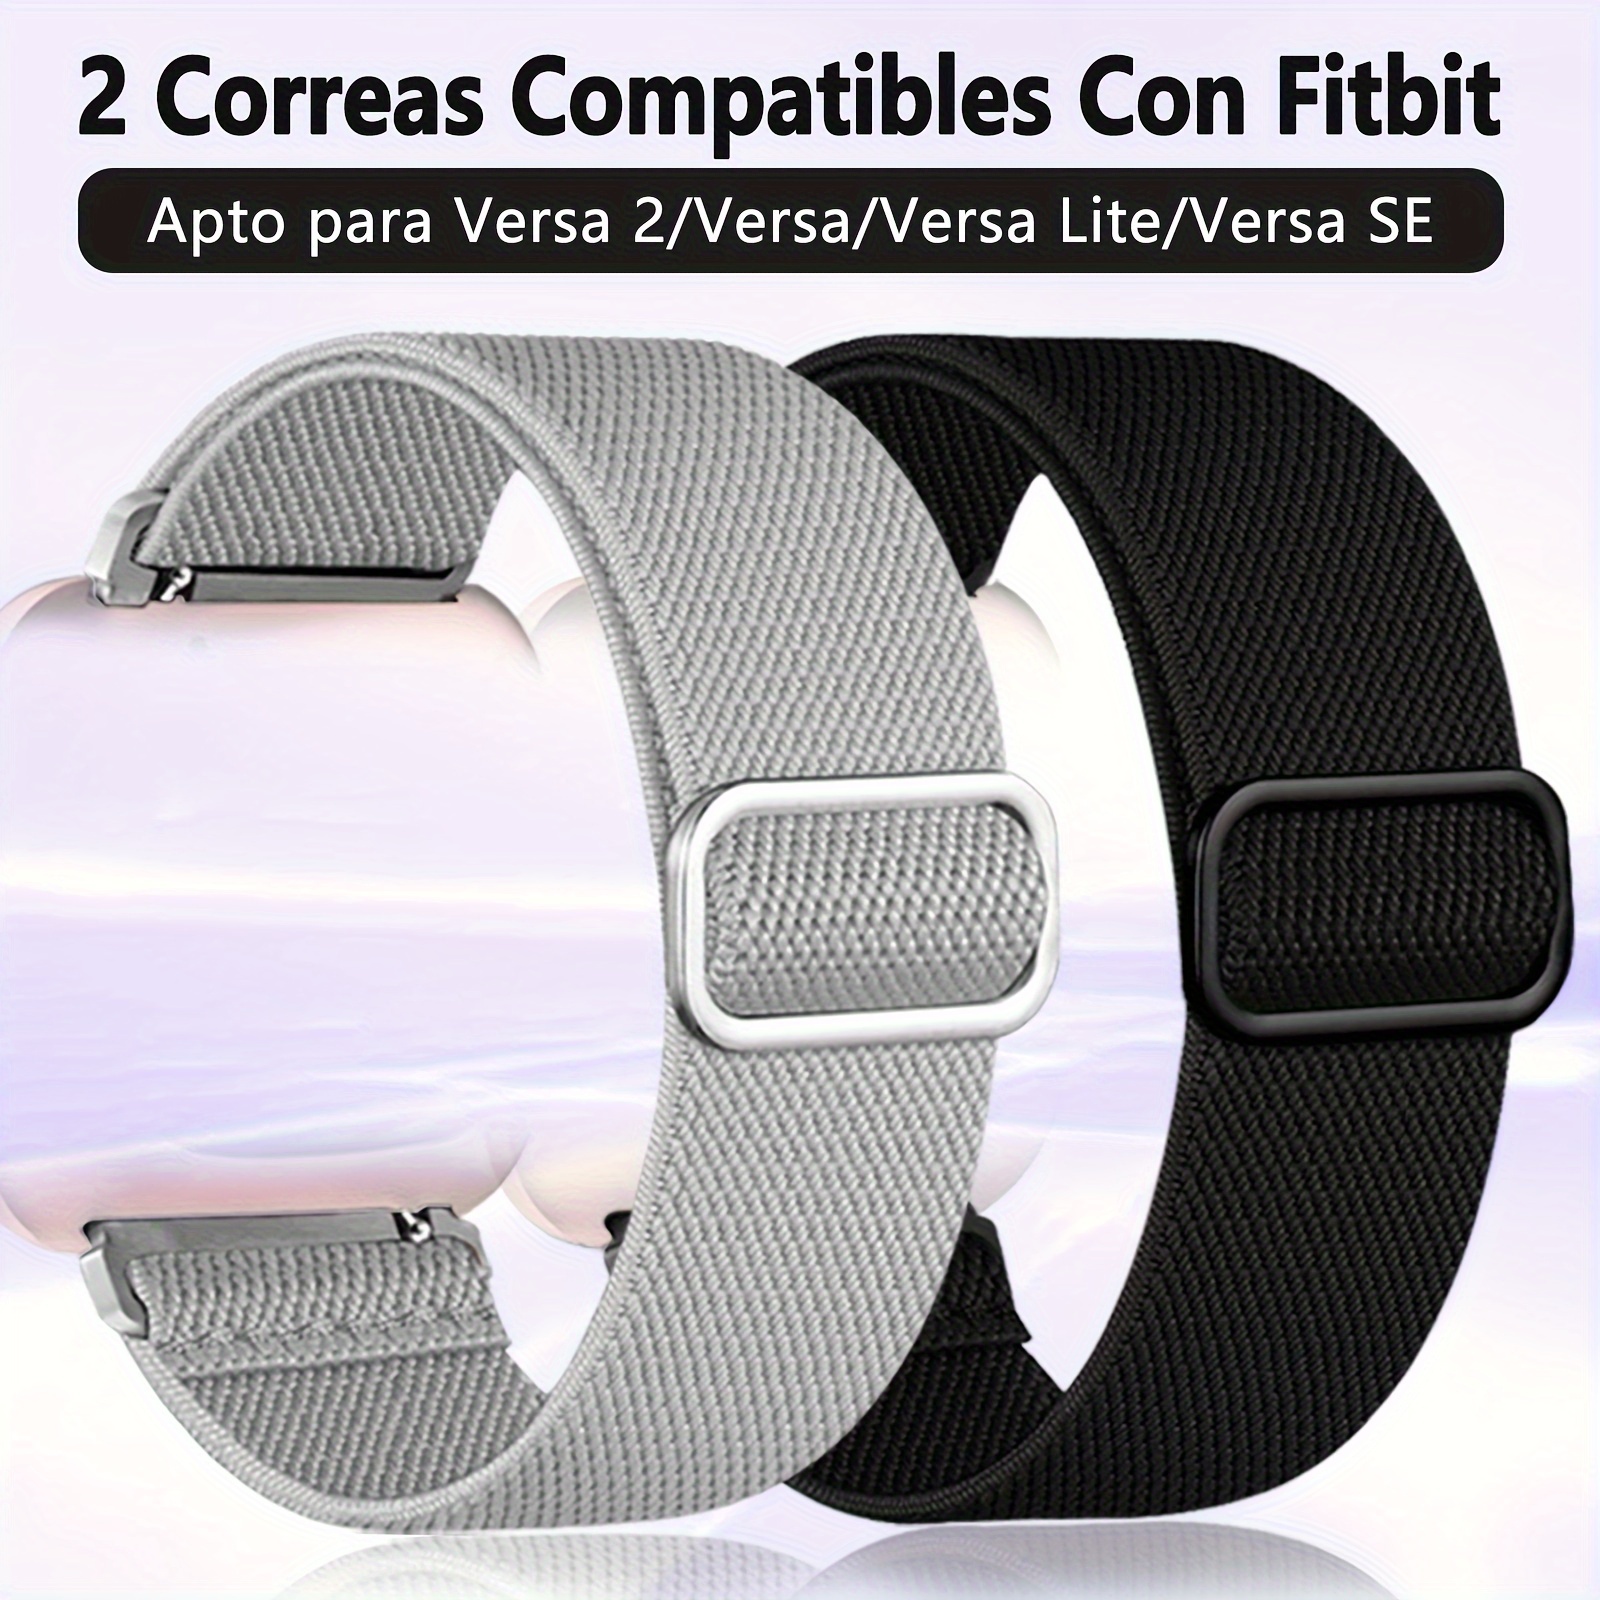 200 correas elásticas de tela compatibles con Fitbit Versa 2, correas  elásticas de repuesto para mujer, lindas correas de repuesto compatibles  con